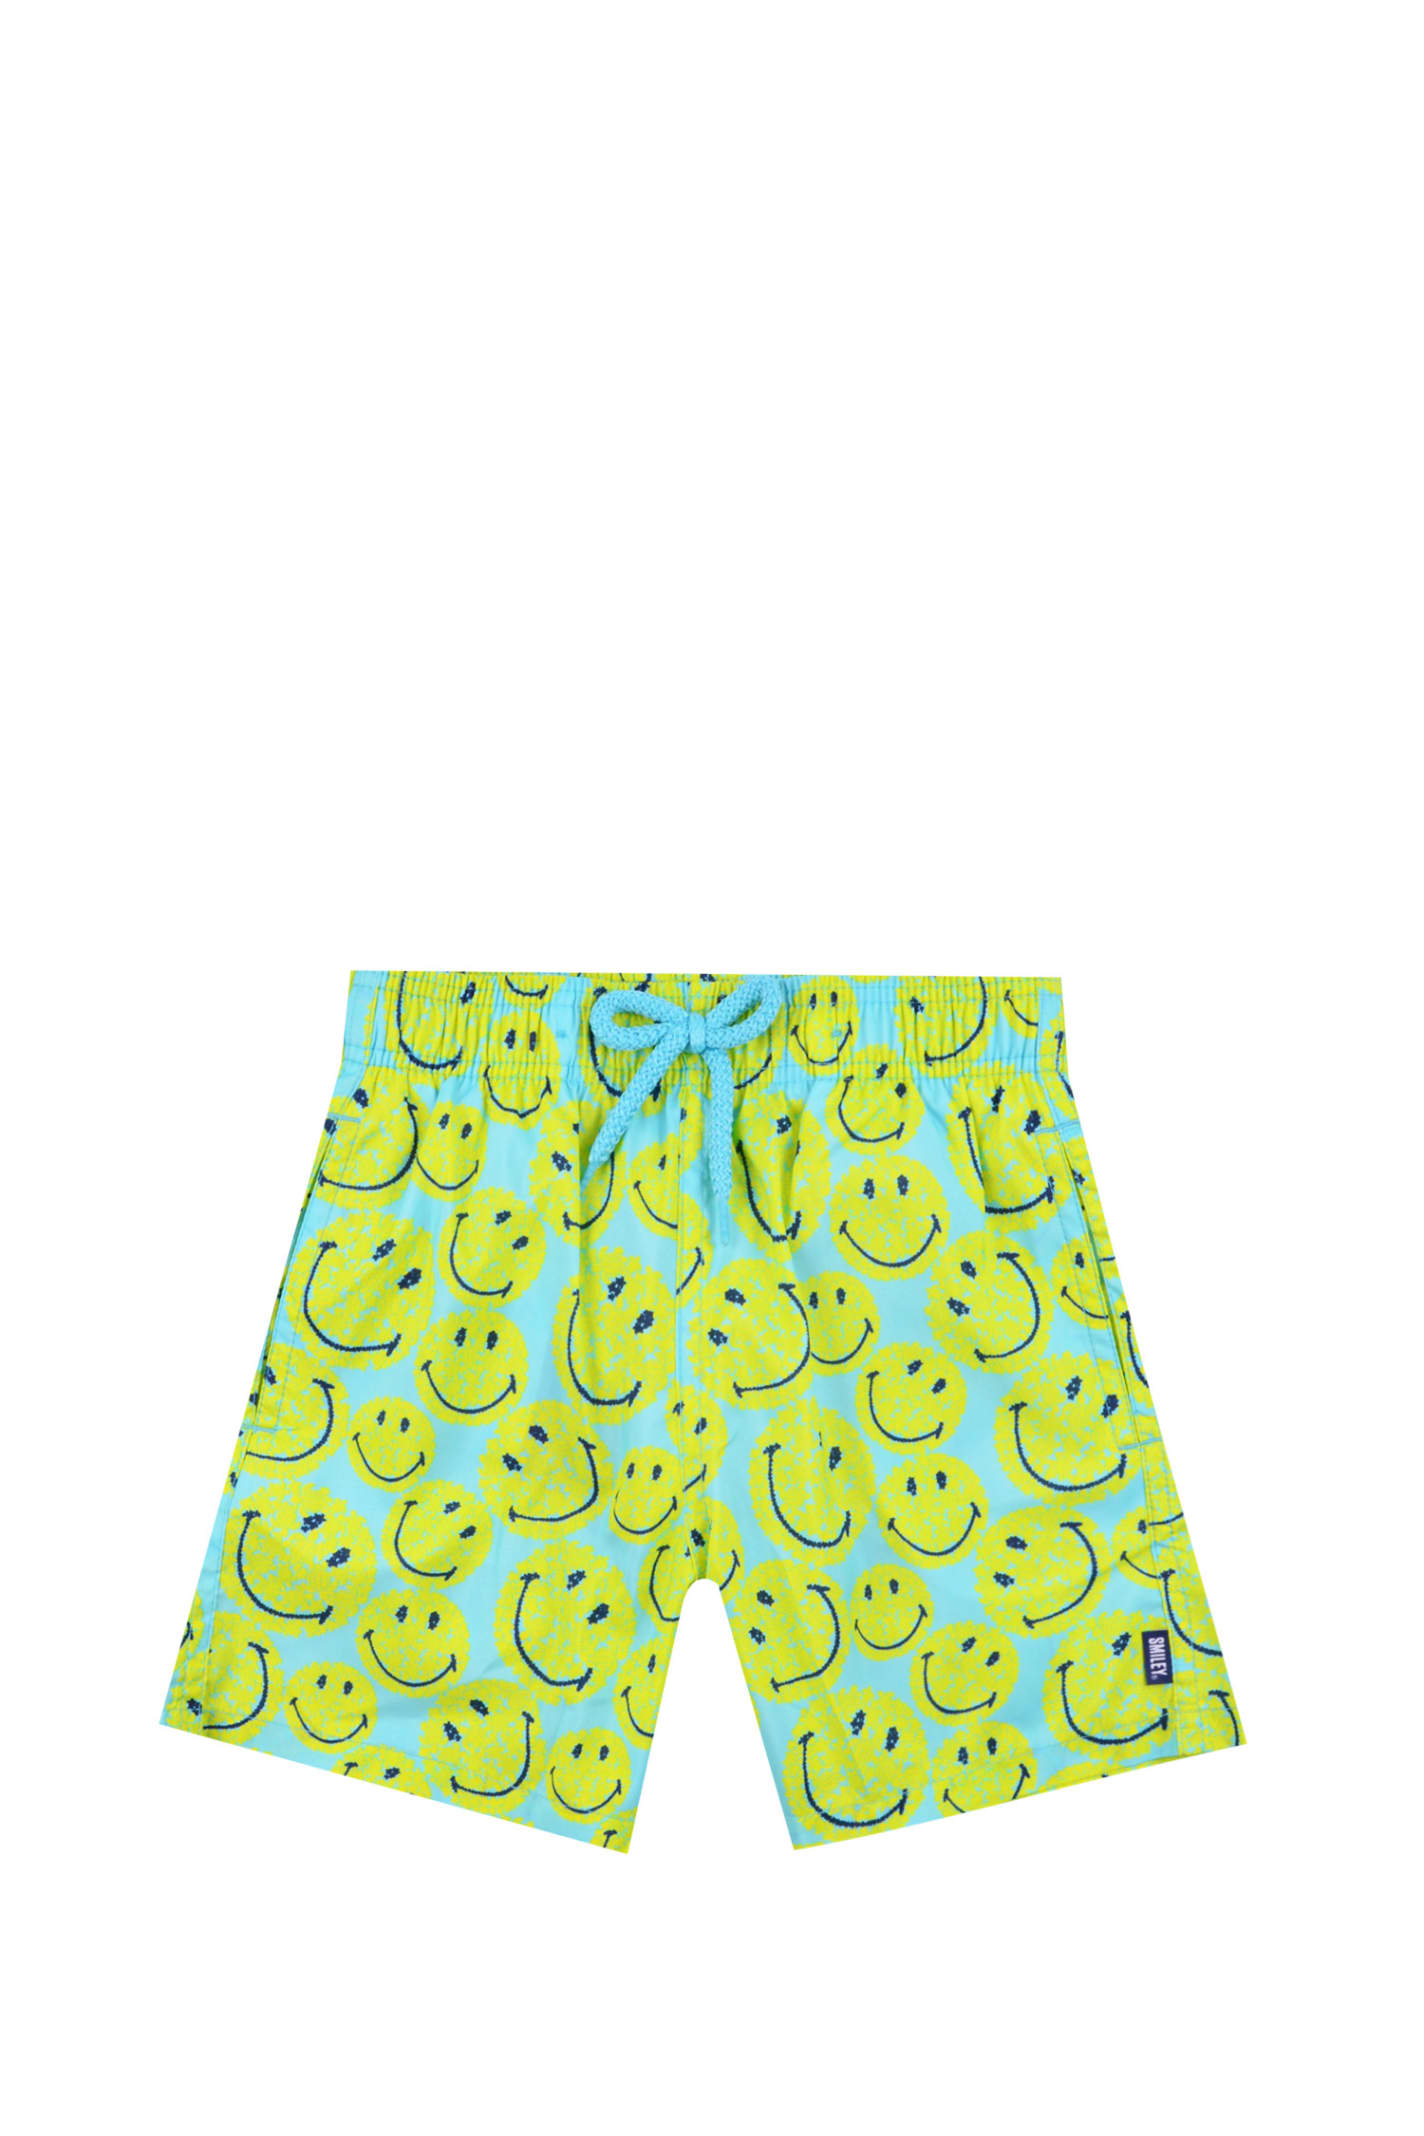 Shop Vilebrequin Turtles Smiley Swim Shorts In Multicolor